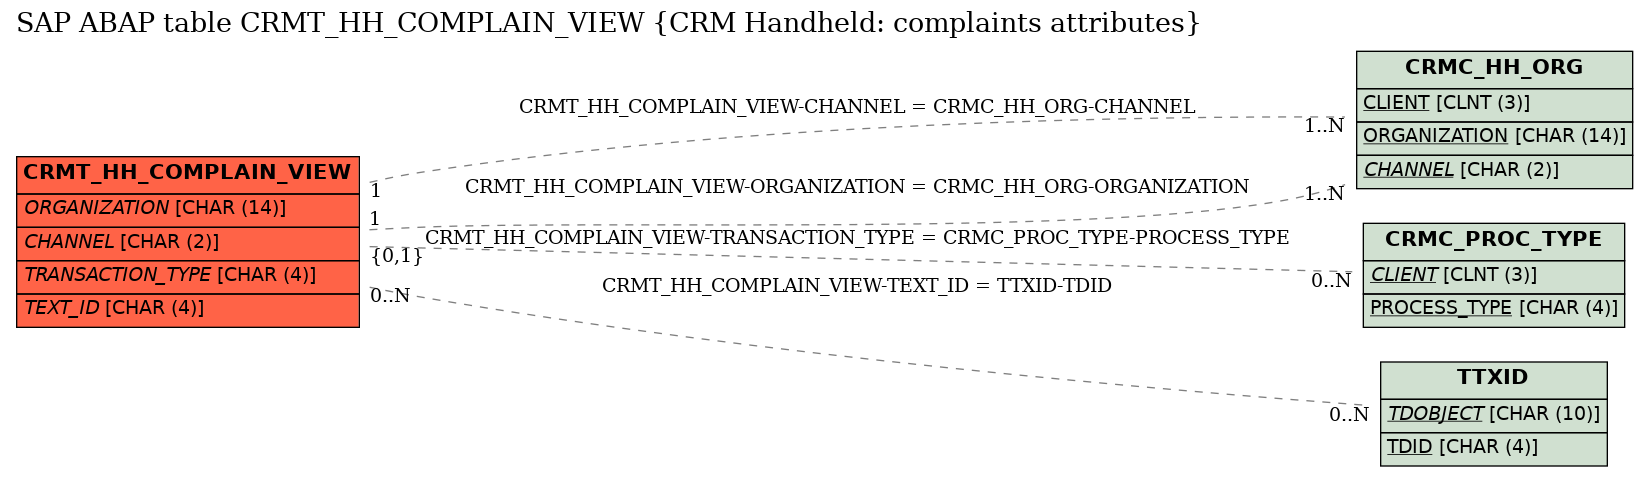 E-R Diagram for table CRMT_HH_COMPLAIN_VIEW (CRM Handheld: complaints attributes)